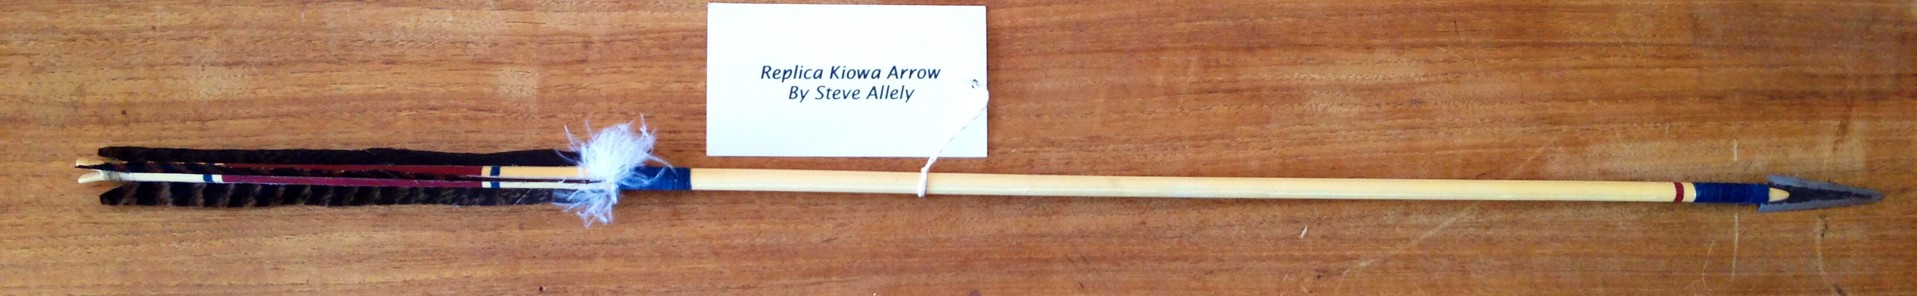 Replica Kiowa Arrow by Steve Allely